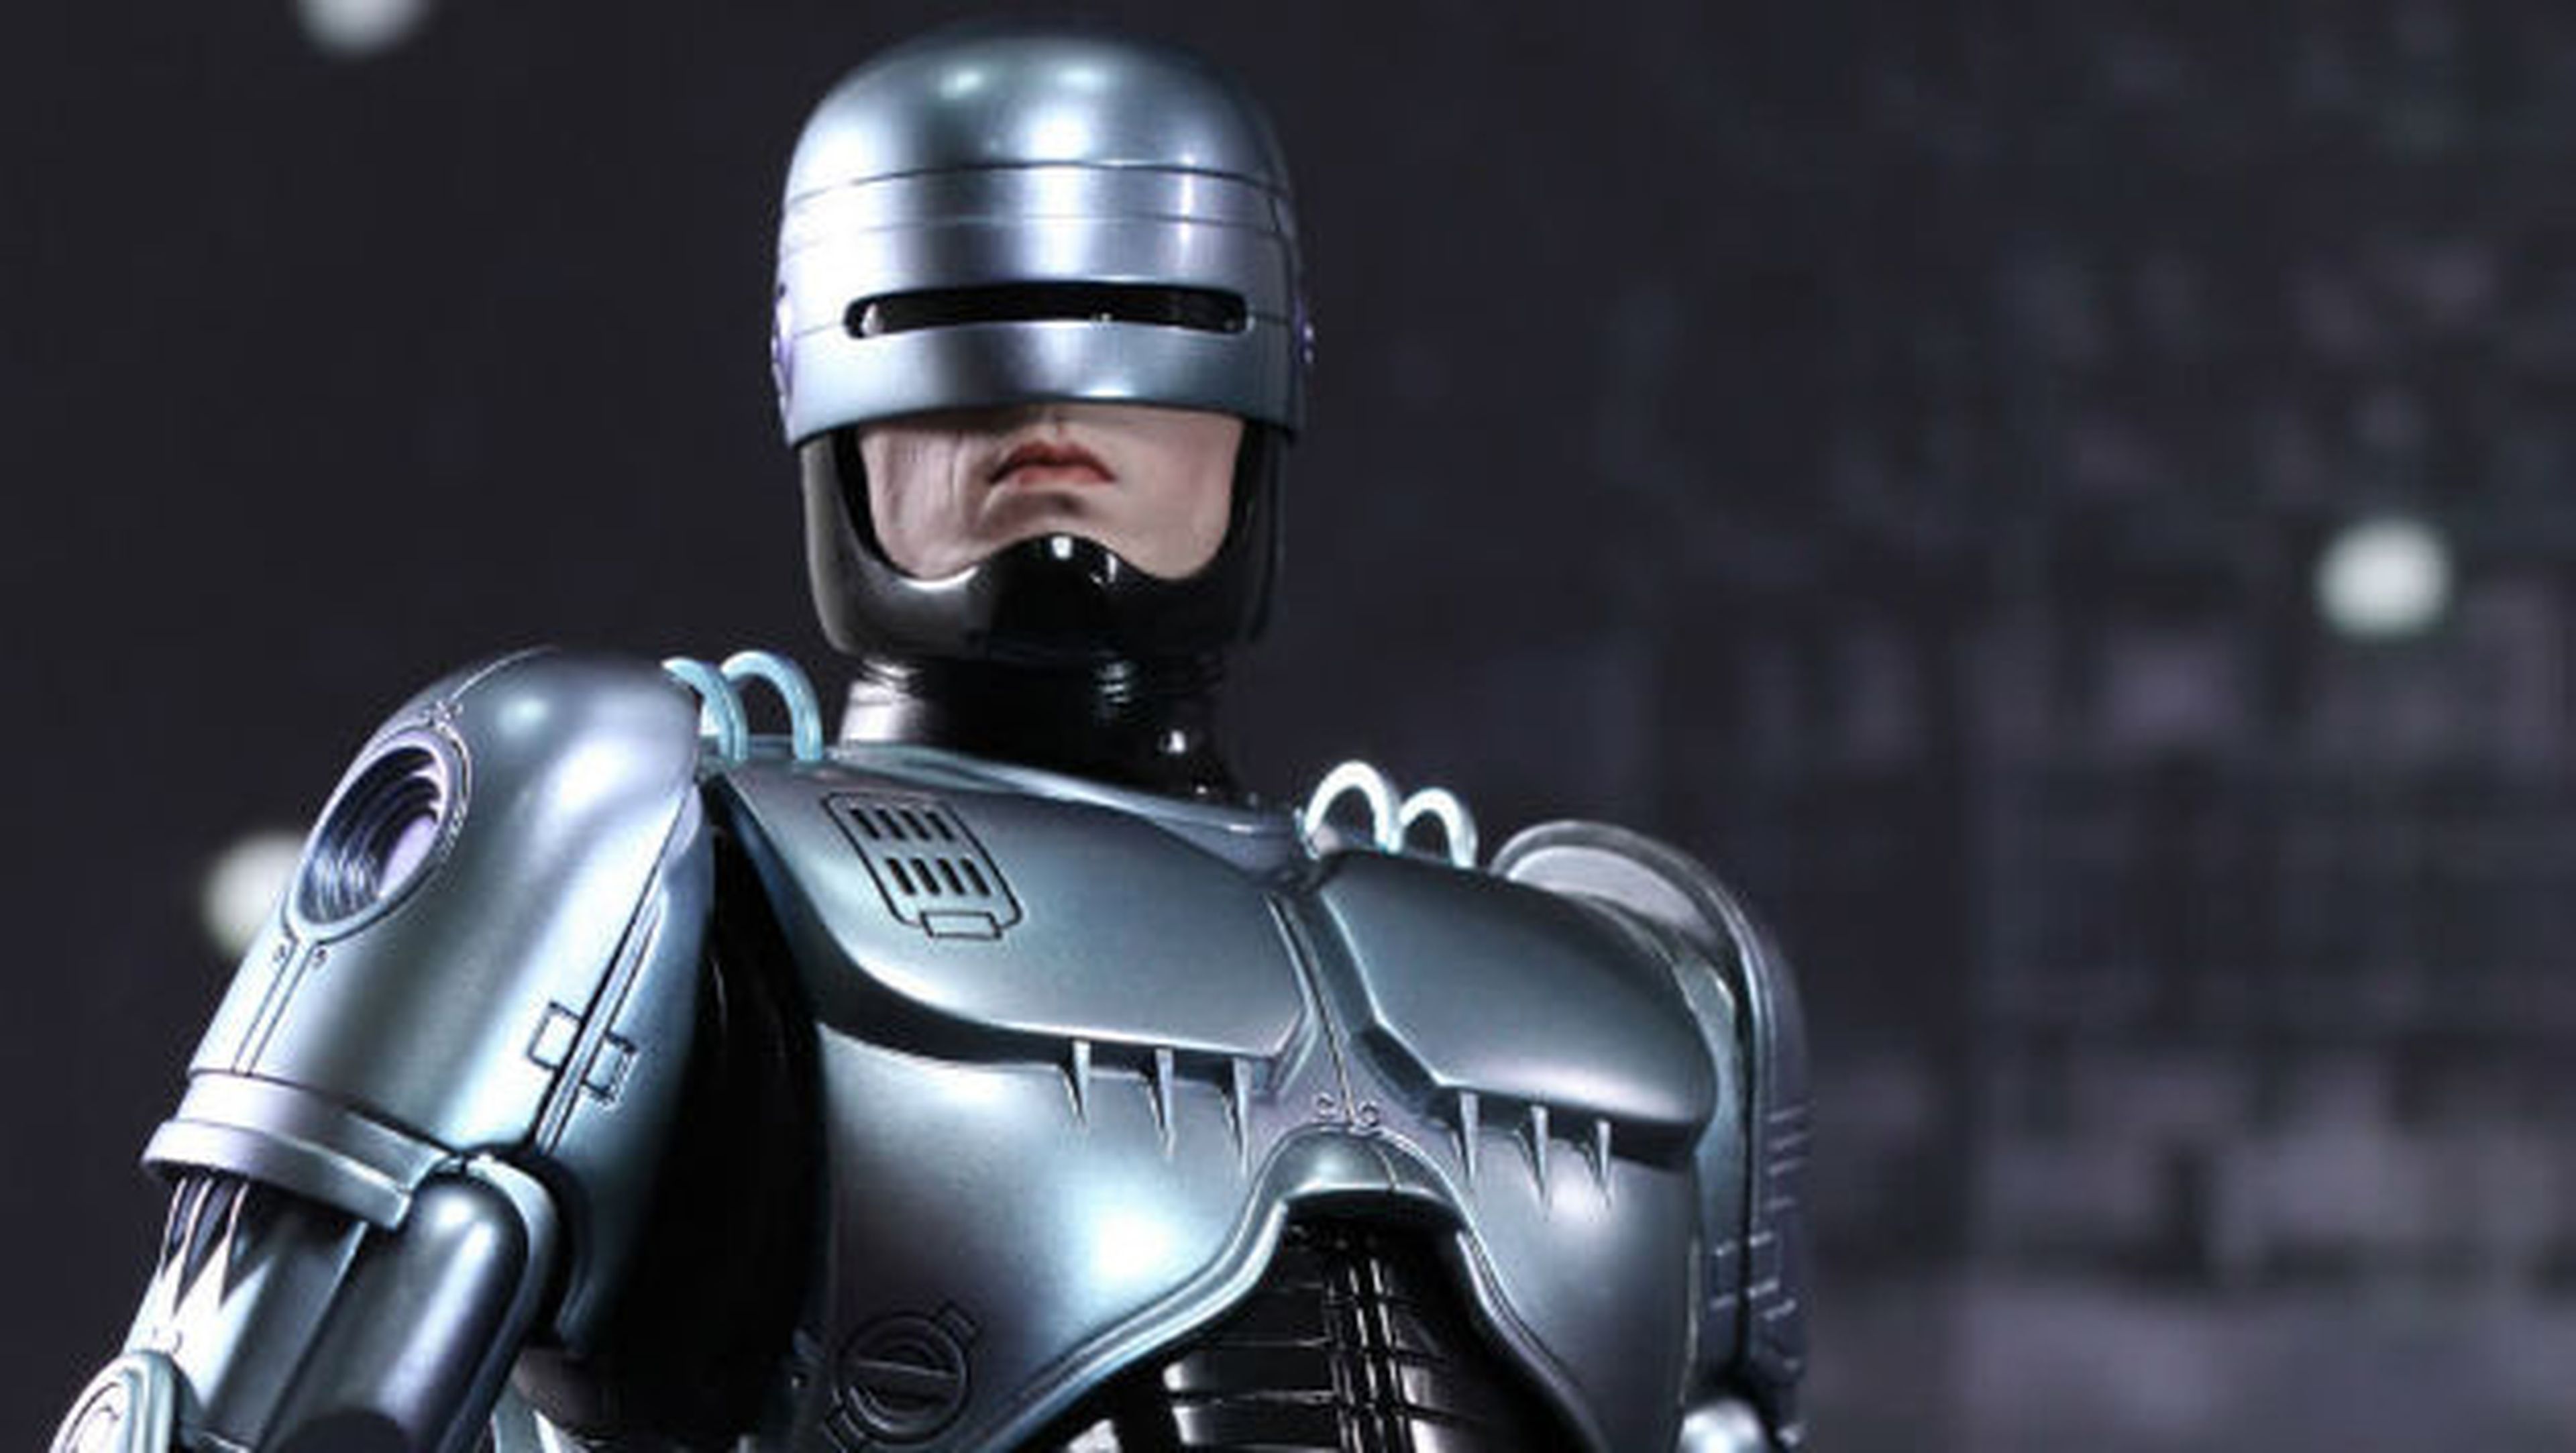 Crean el primer robot policía con inteligencia artificial.